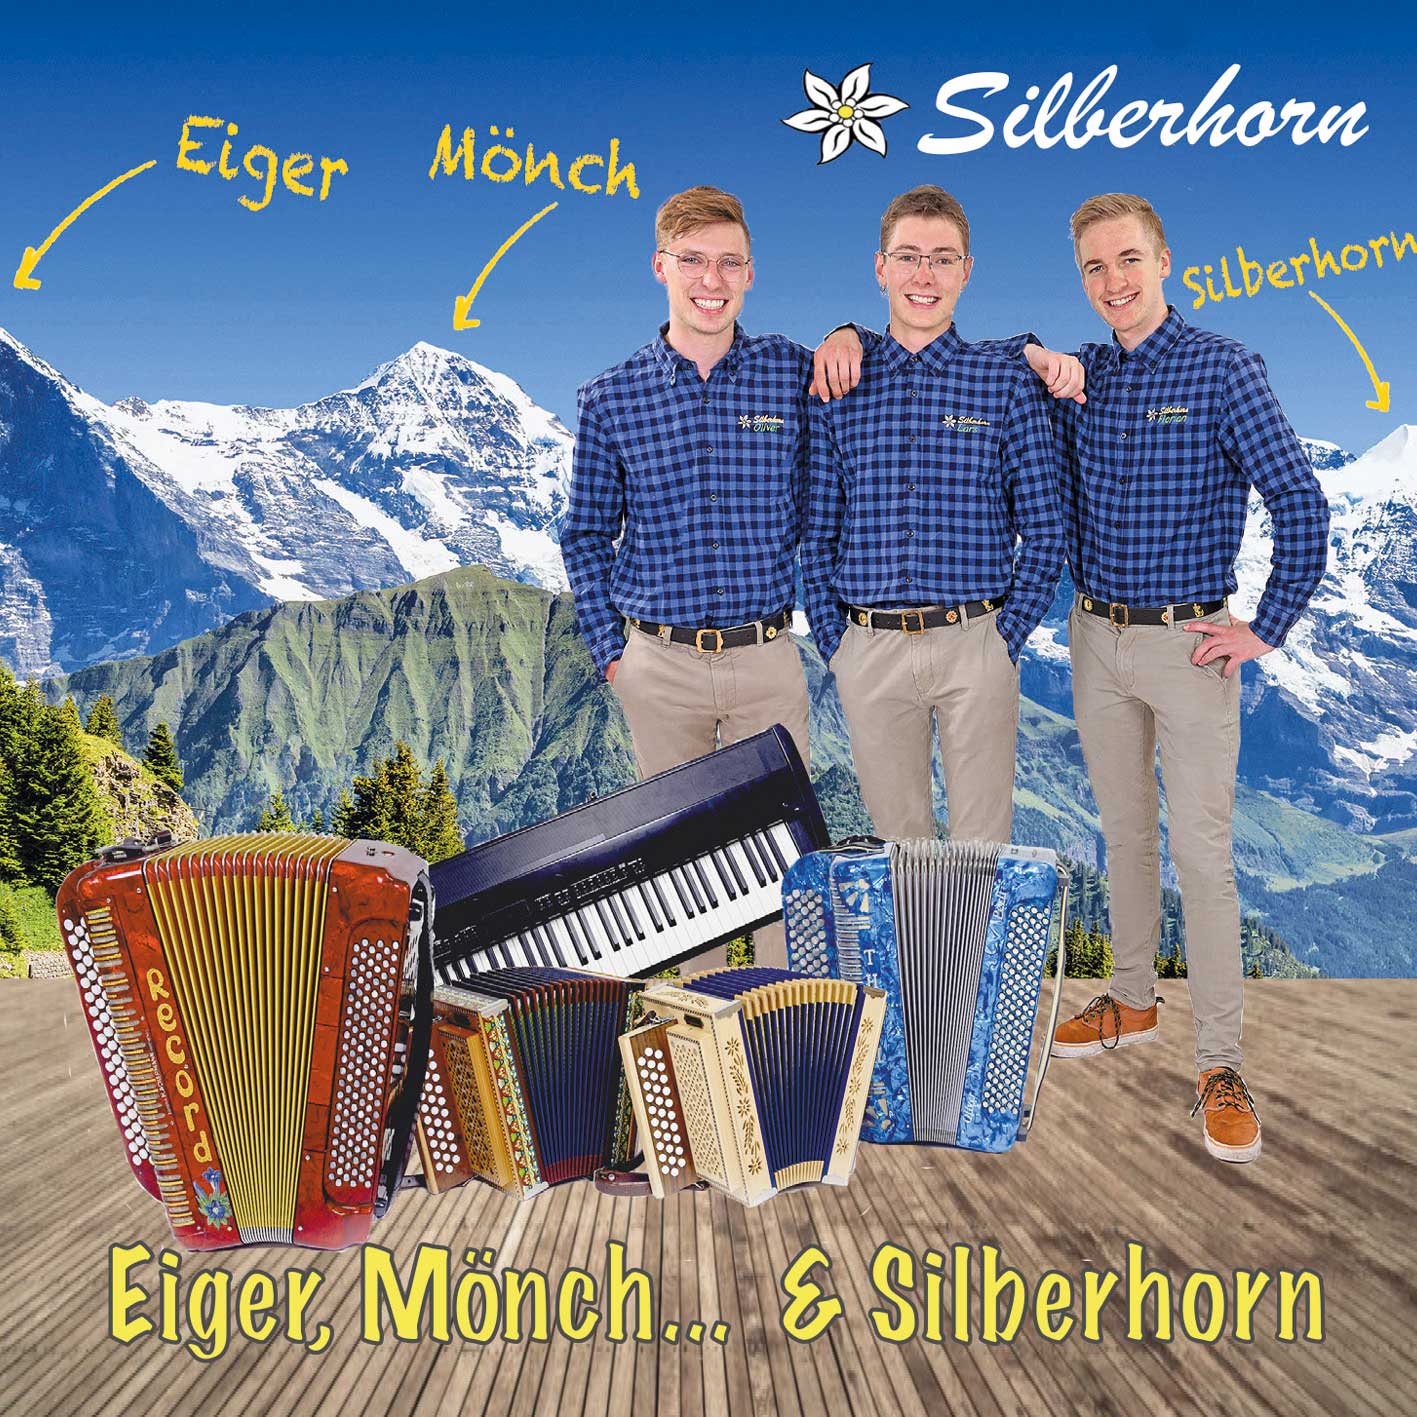 Eiger, Mönch… & Silberhorn